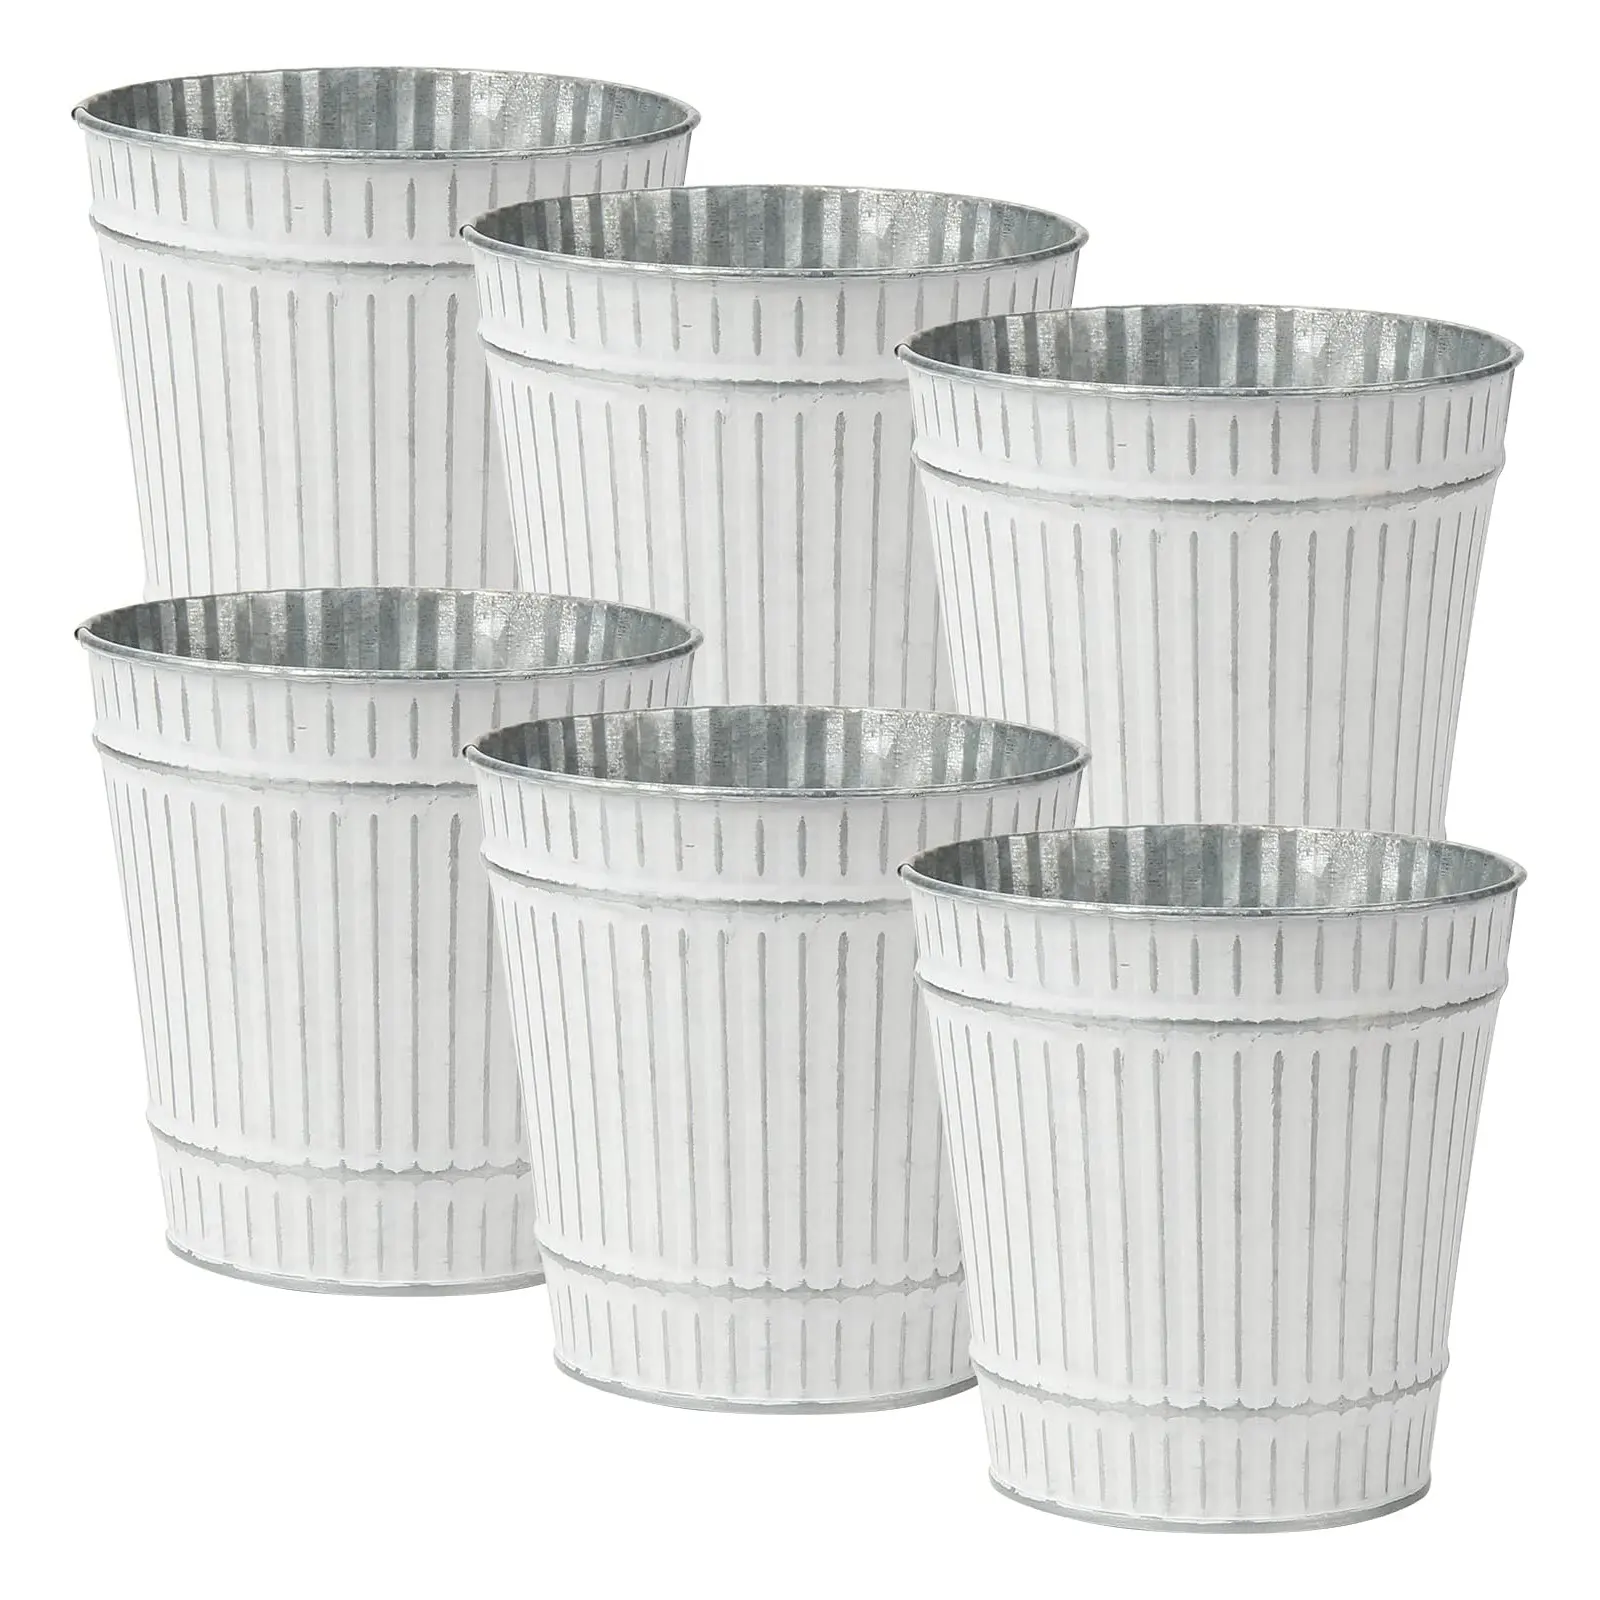 White wash garden flower bucket premium quality metal flower pots and garden buckets